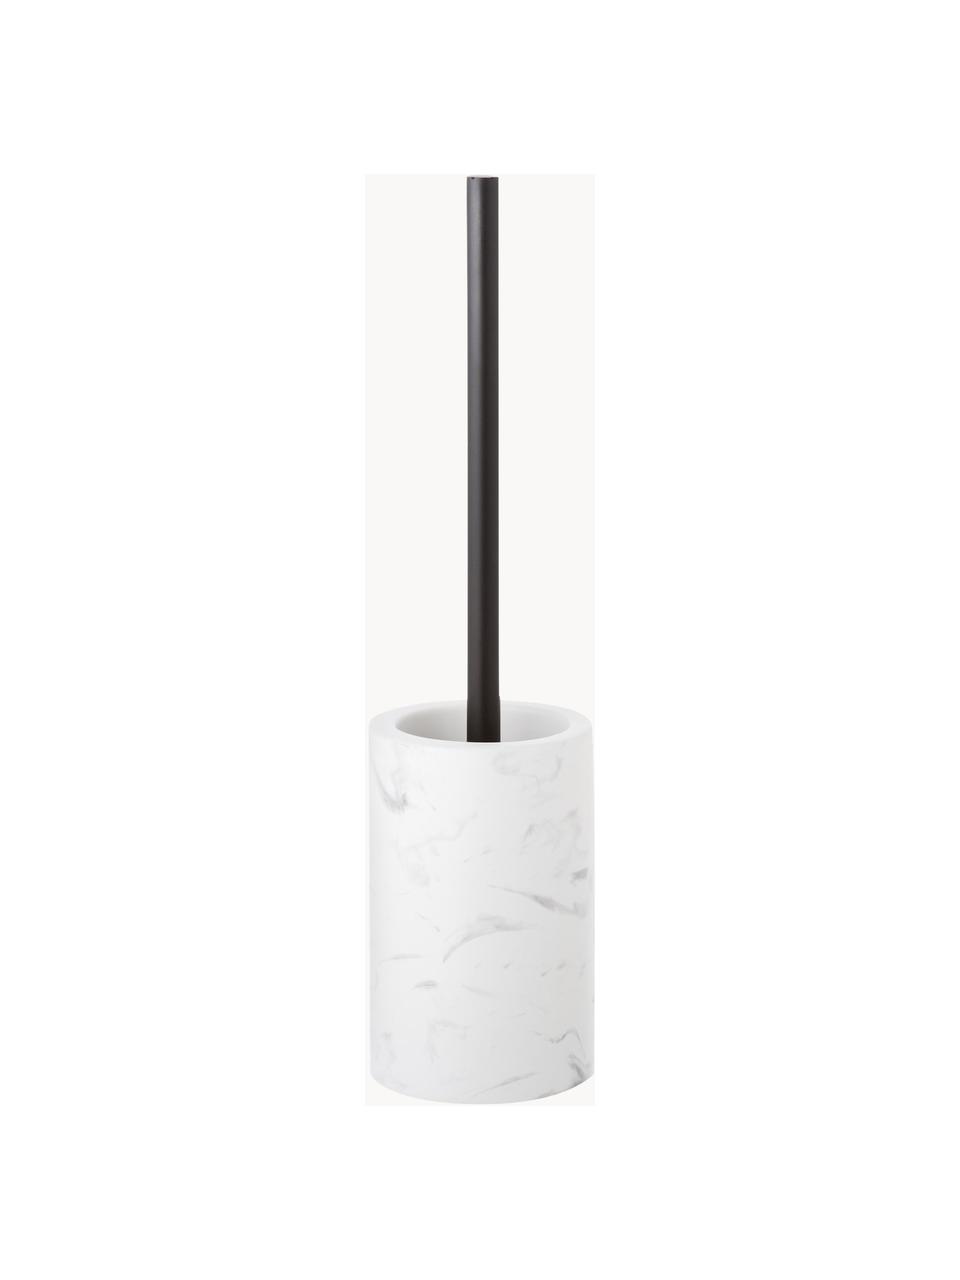 Toilettenbürste Daro mit Keramik-Behälter, Behälter: Keramik, Griff: Metall, beschichtet, Weiß, marmoriert, Schwarz, Ø 10 x H 43 cm